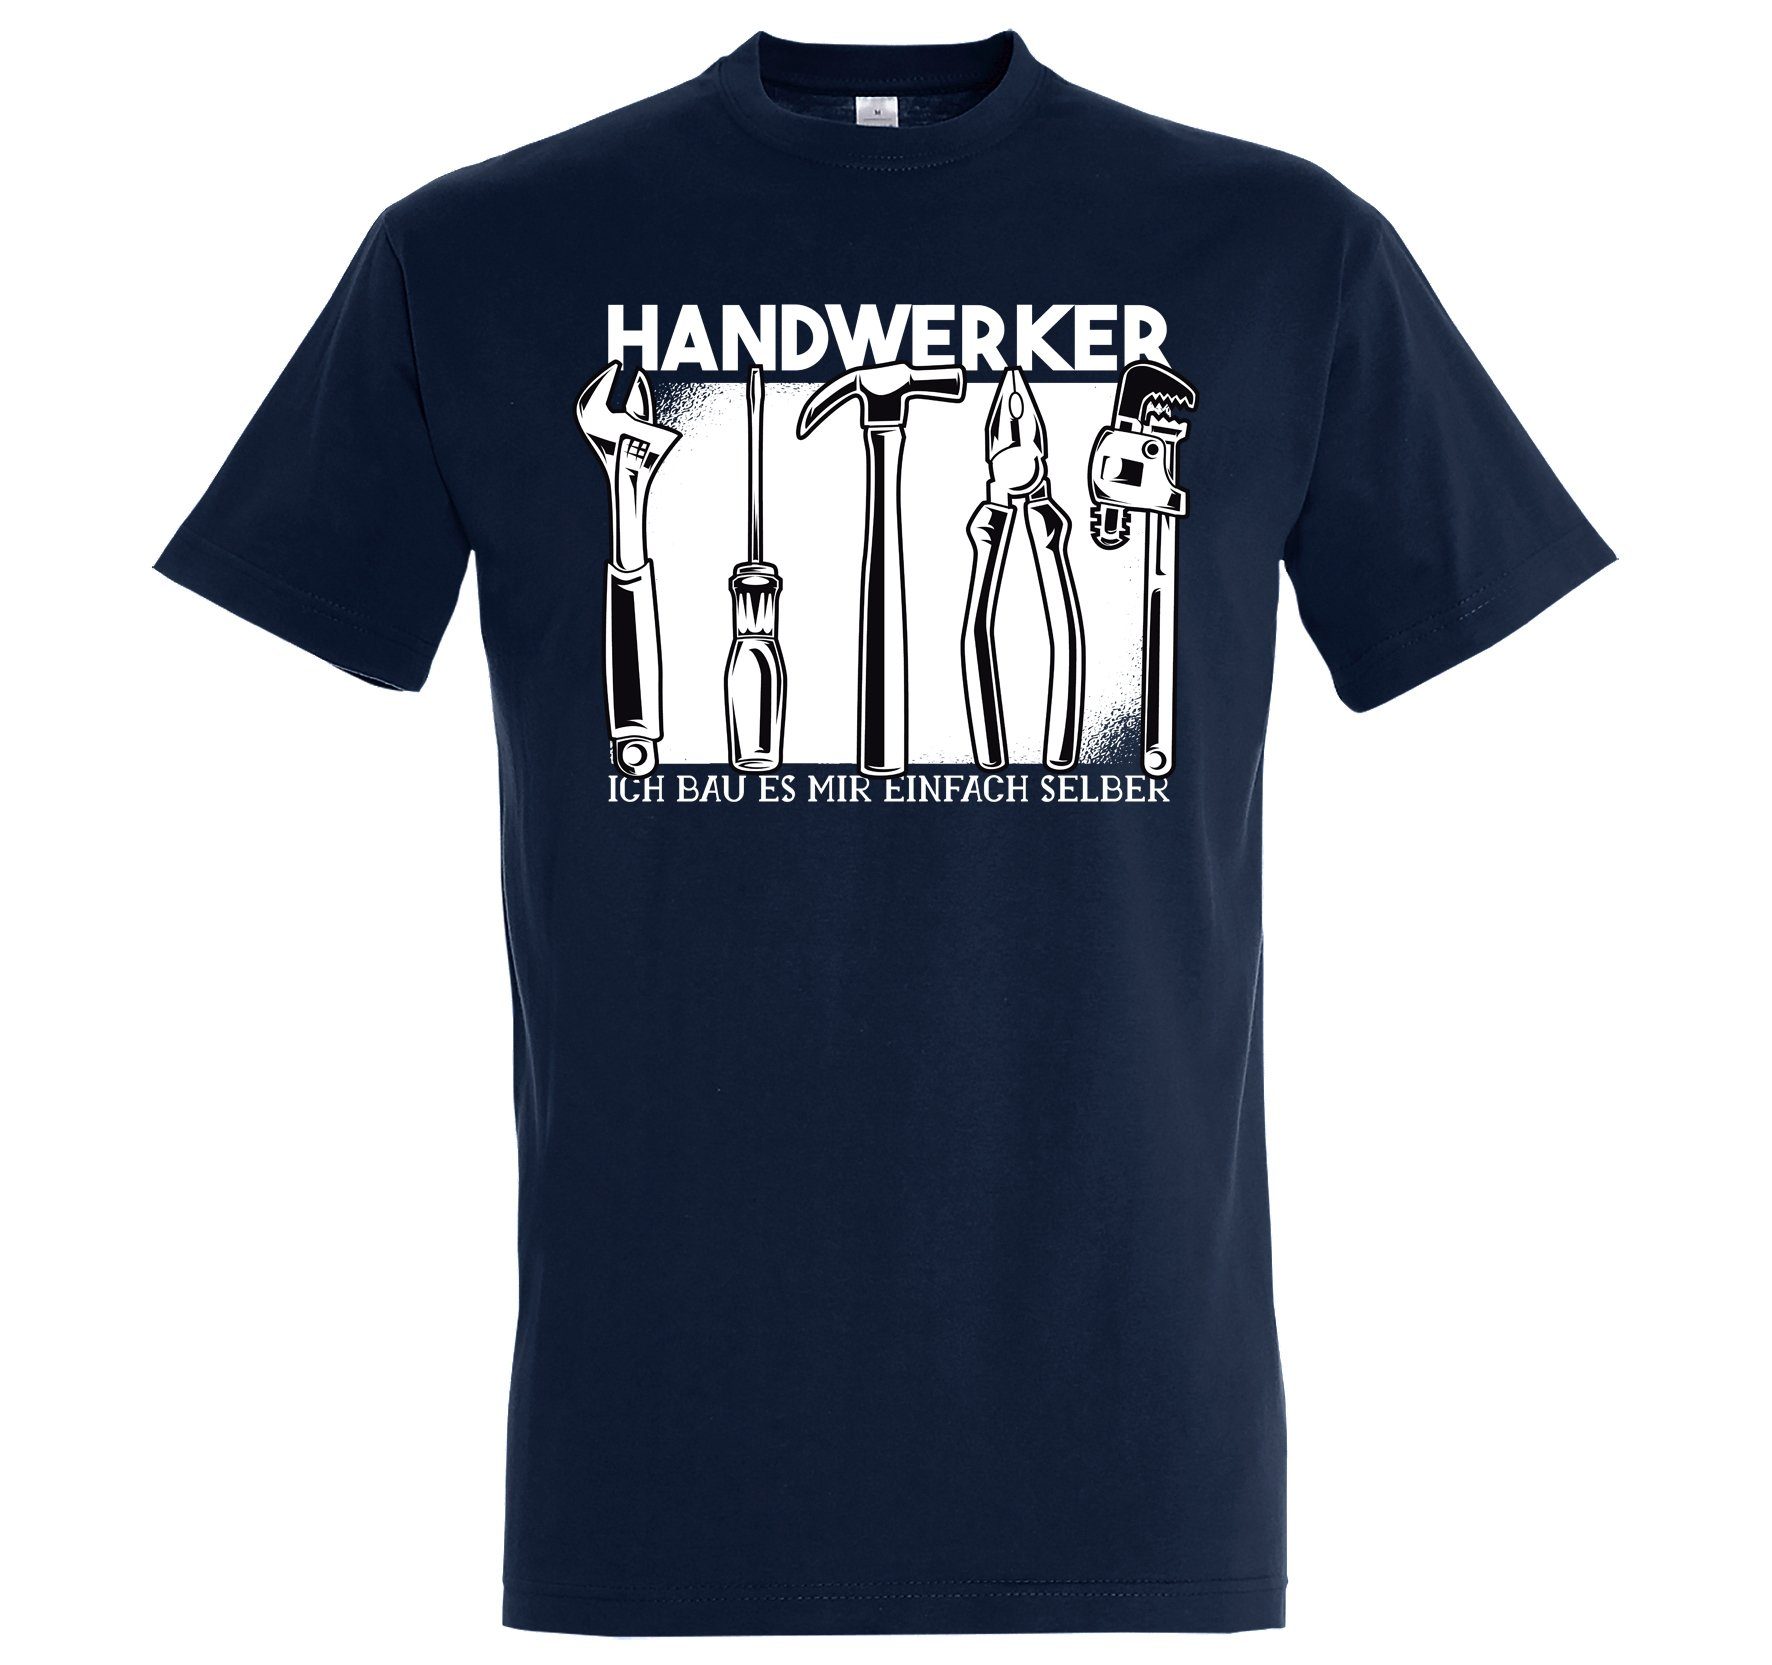 Youth Designz T-Shirt Handwerker Herren Shirt mit lustigem Handwerker Frontmotiv Navyblau